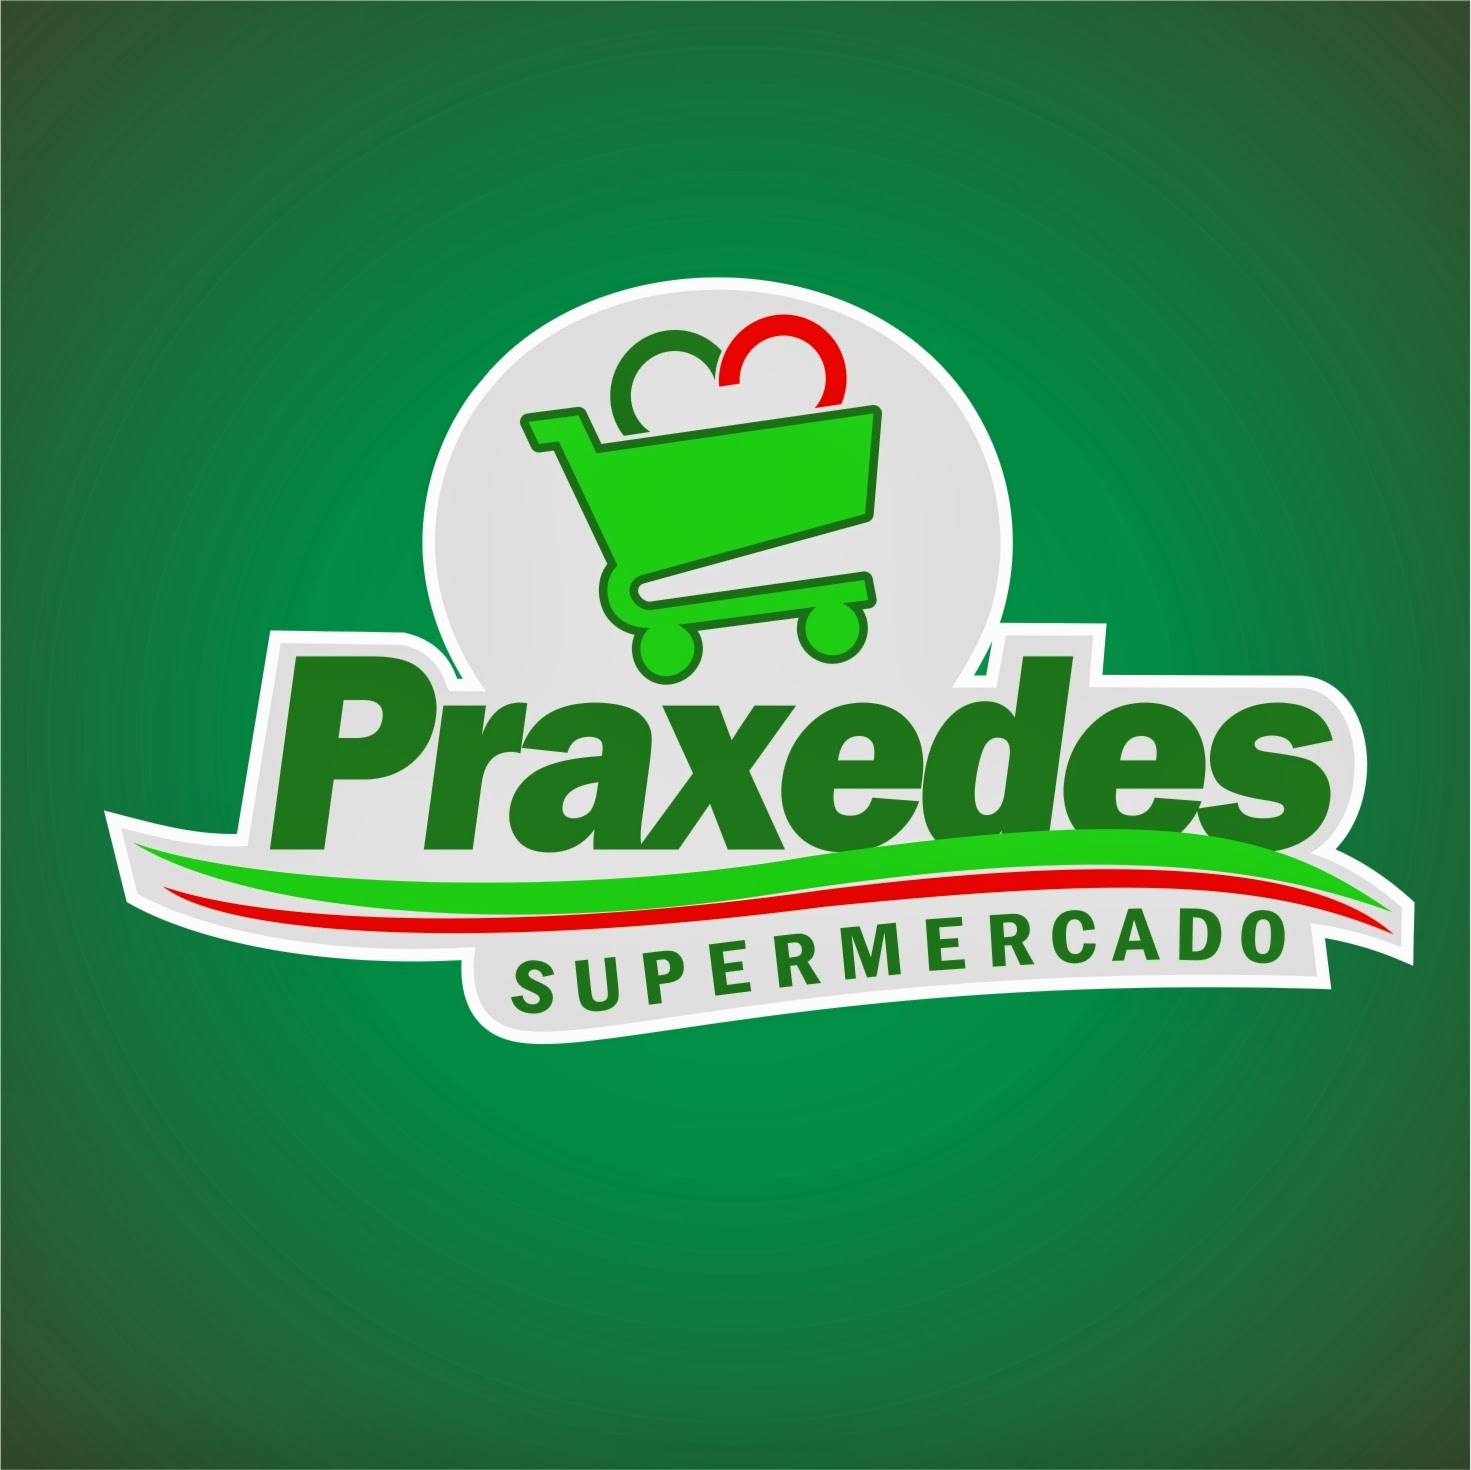 Super Mercado Praxedes.